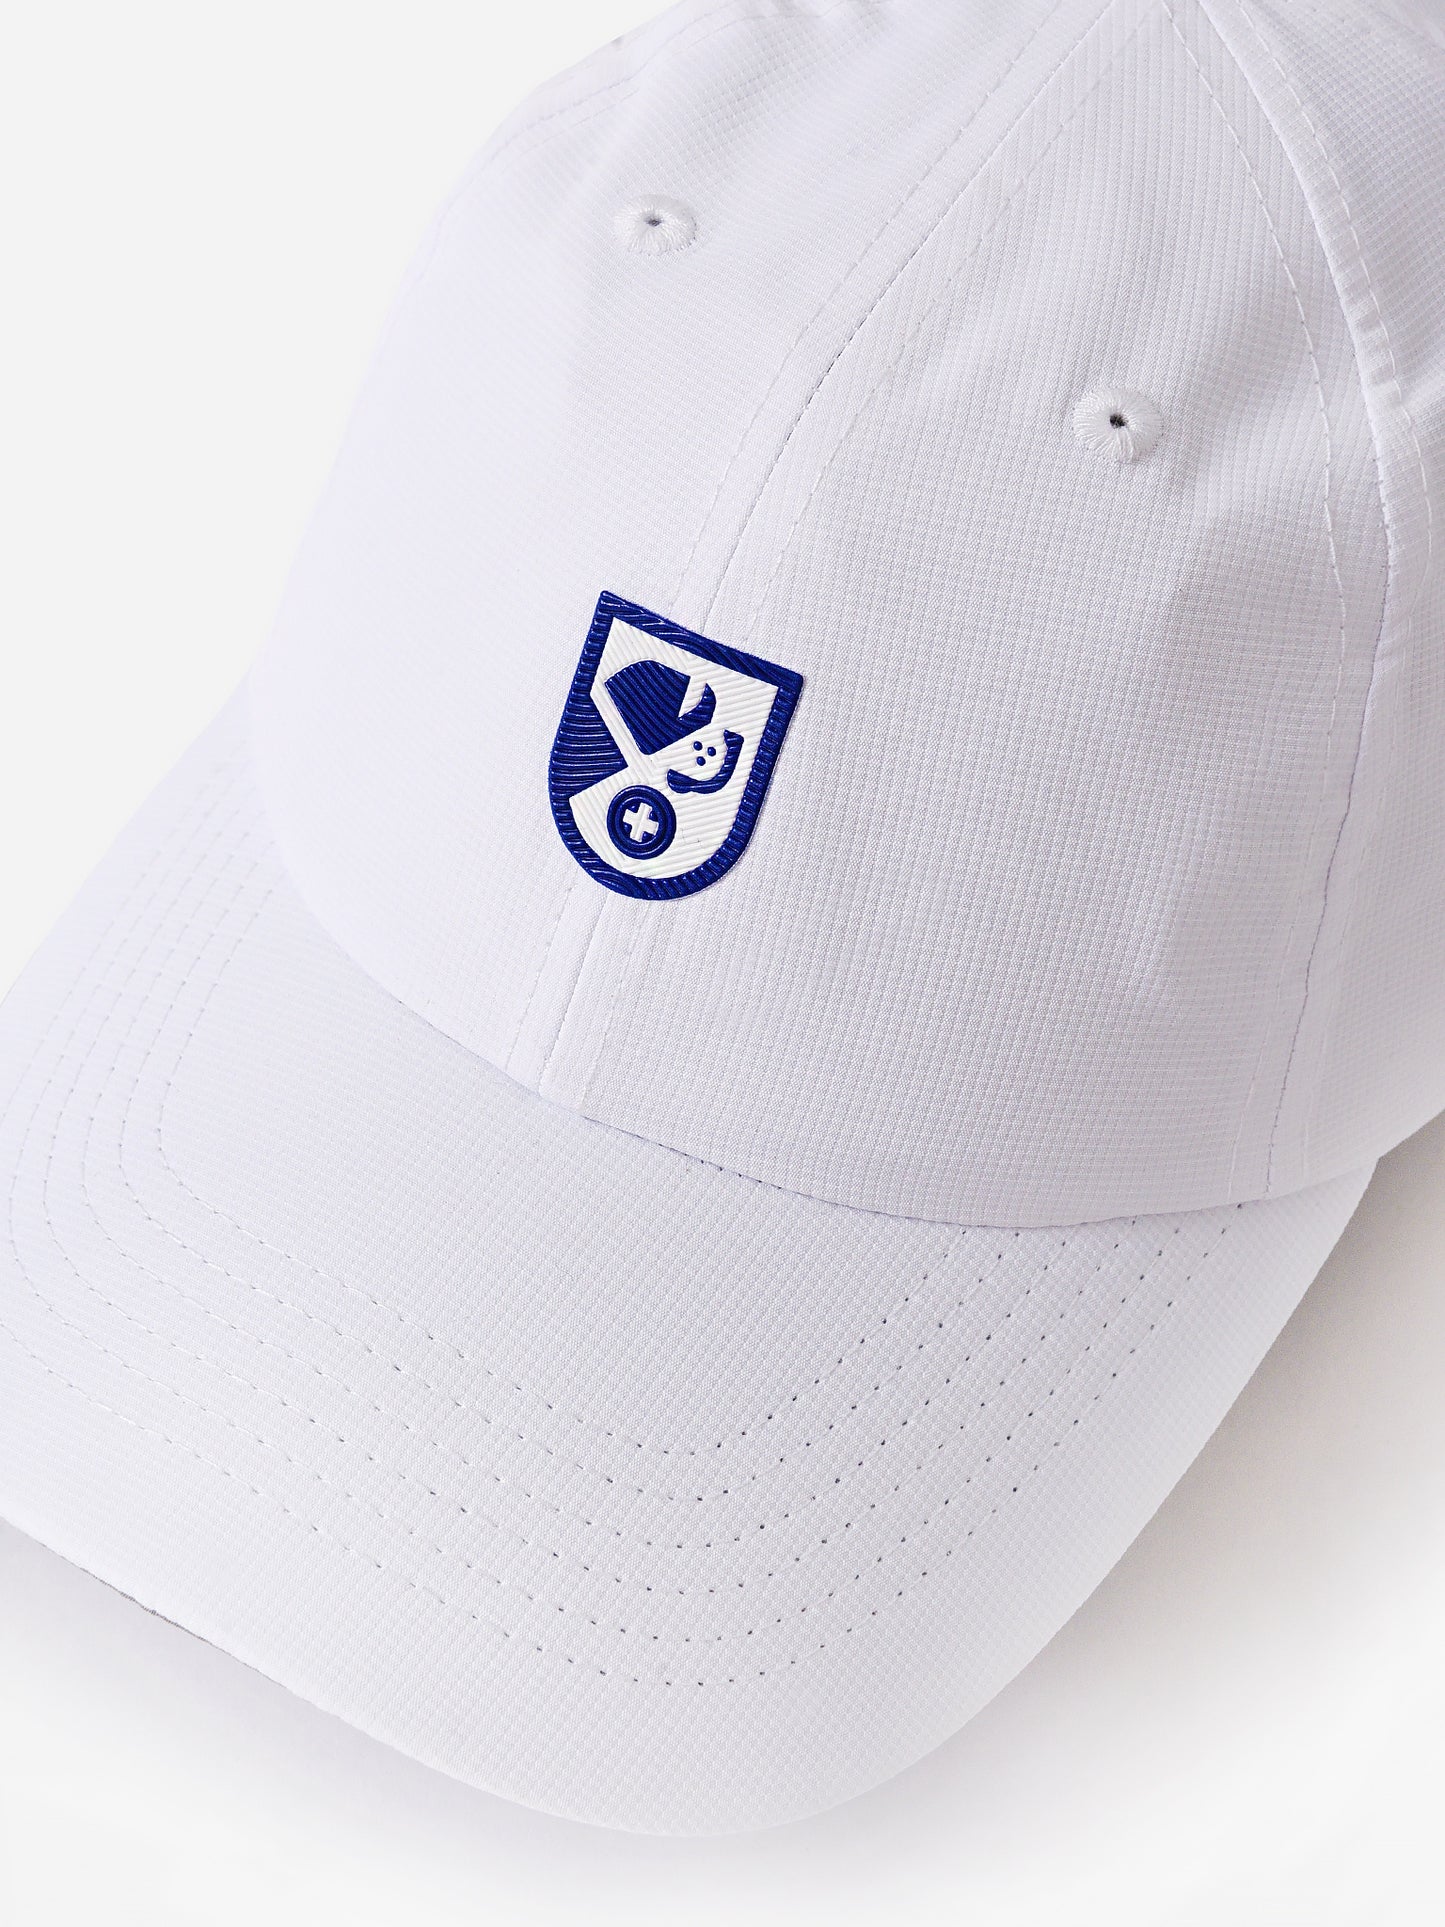 Saint Bernard 3D Logo Performance Hat